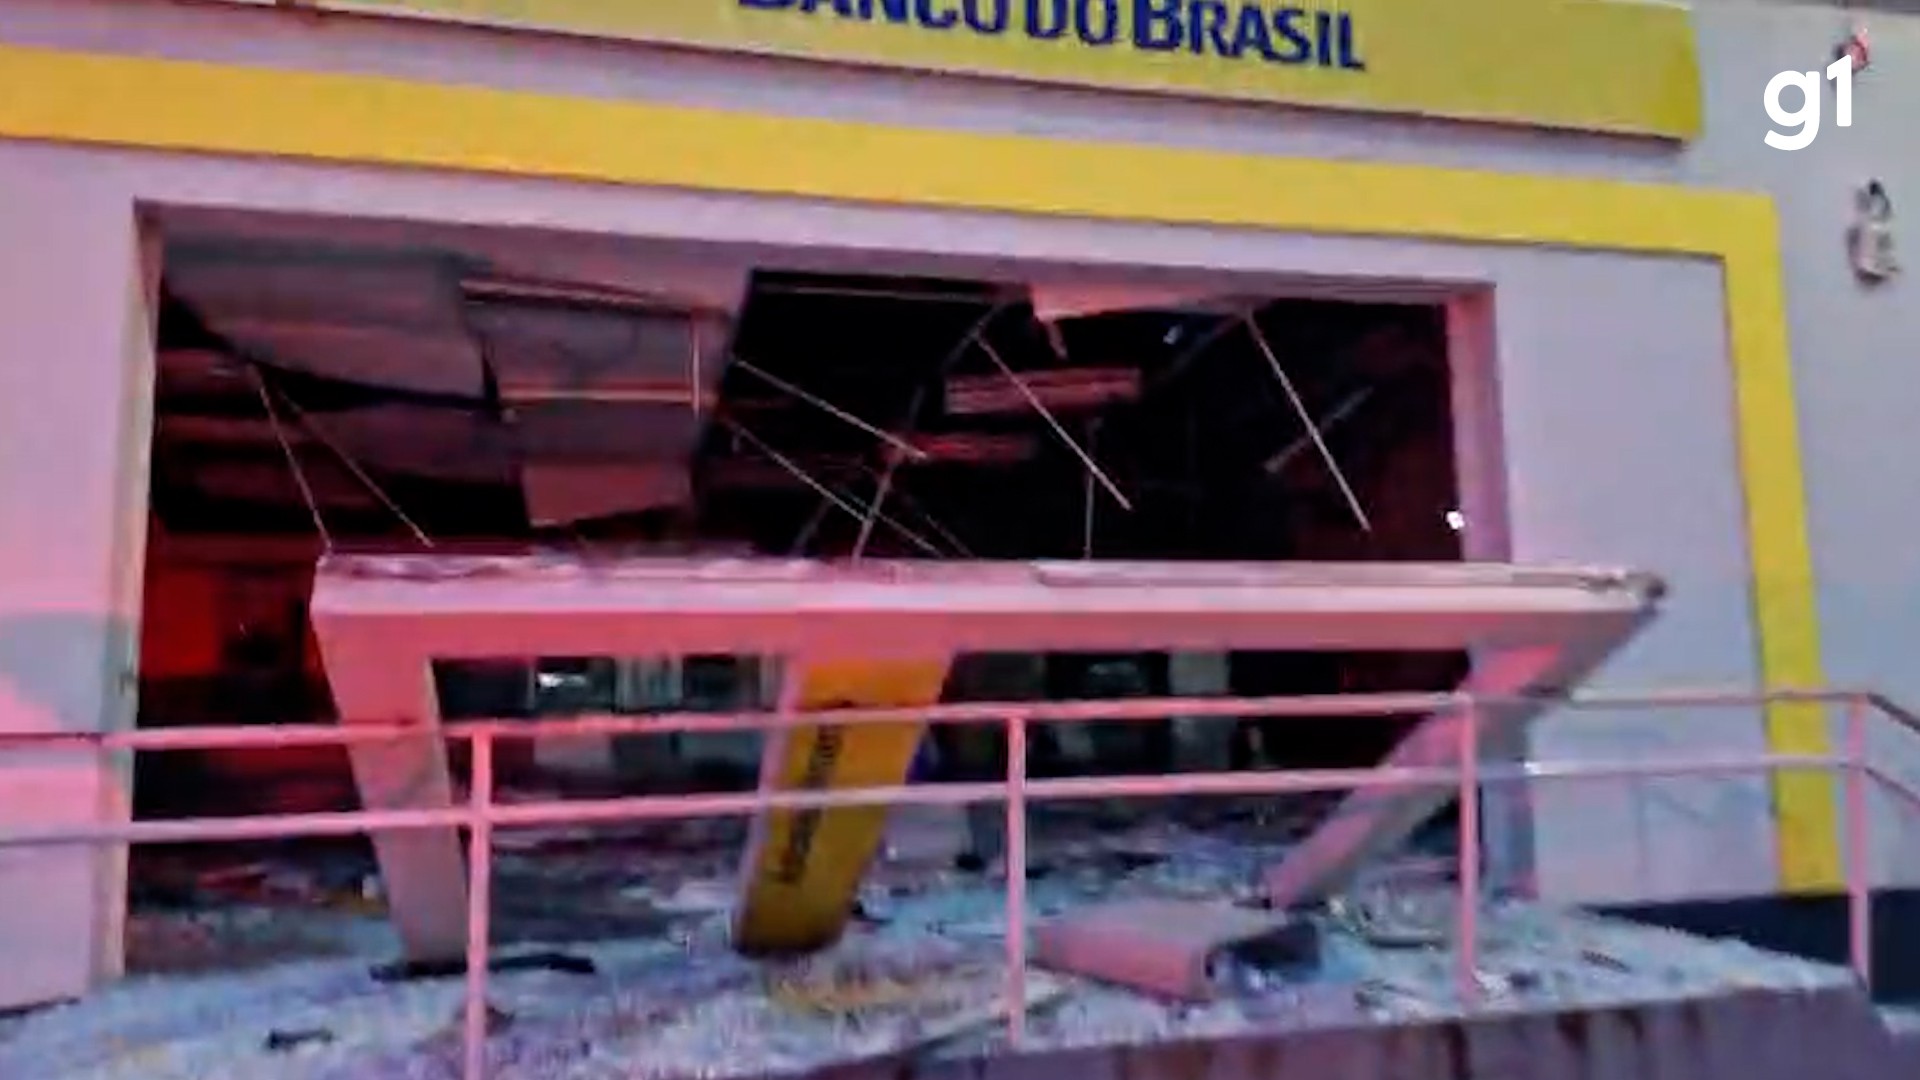 Vídeo mostra agência bancária destruída após tentativa de assalto em Rosário, no MA